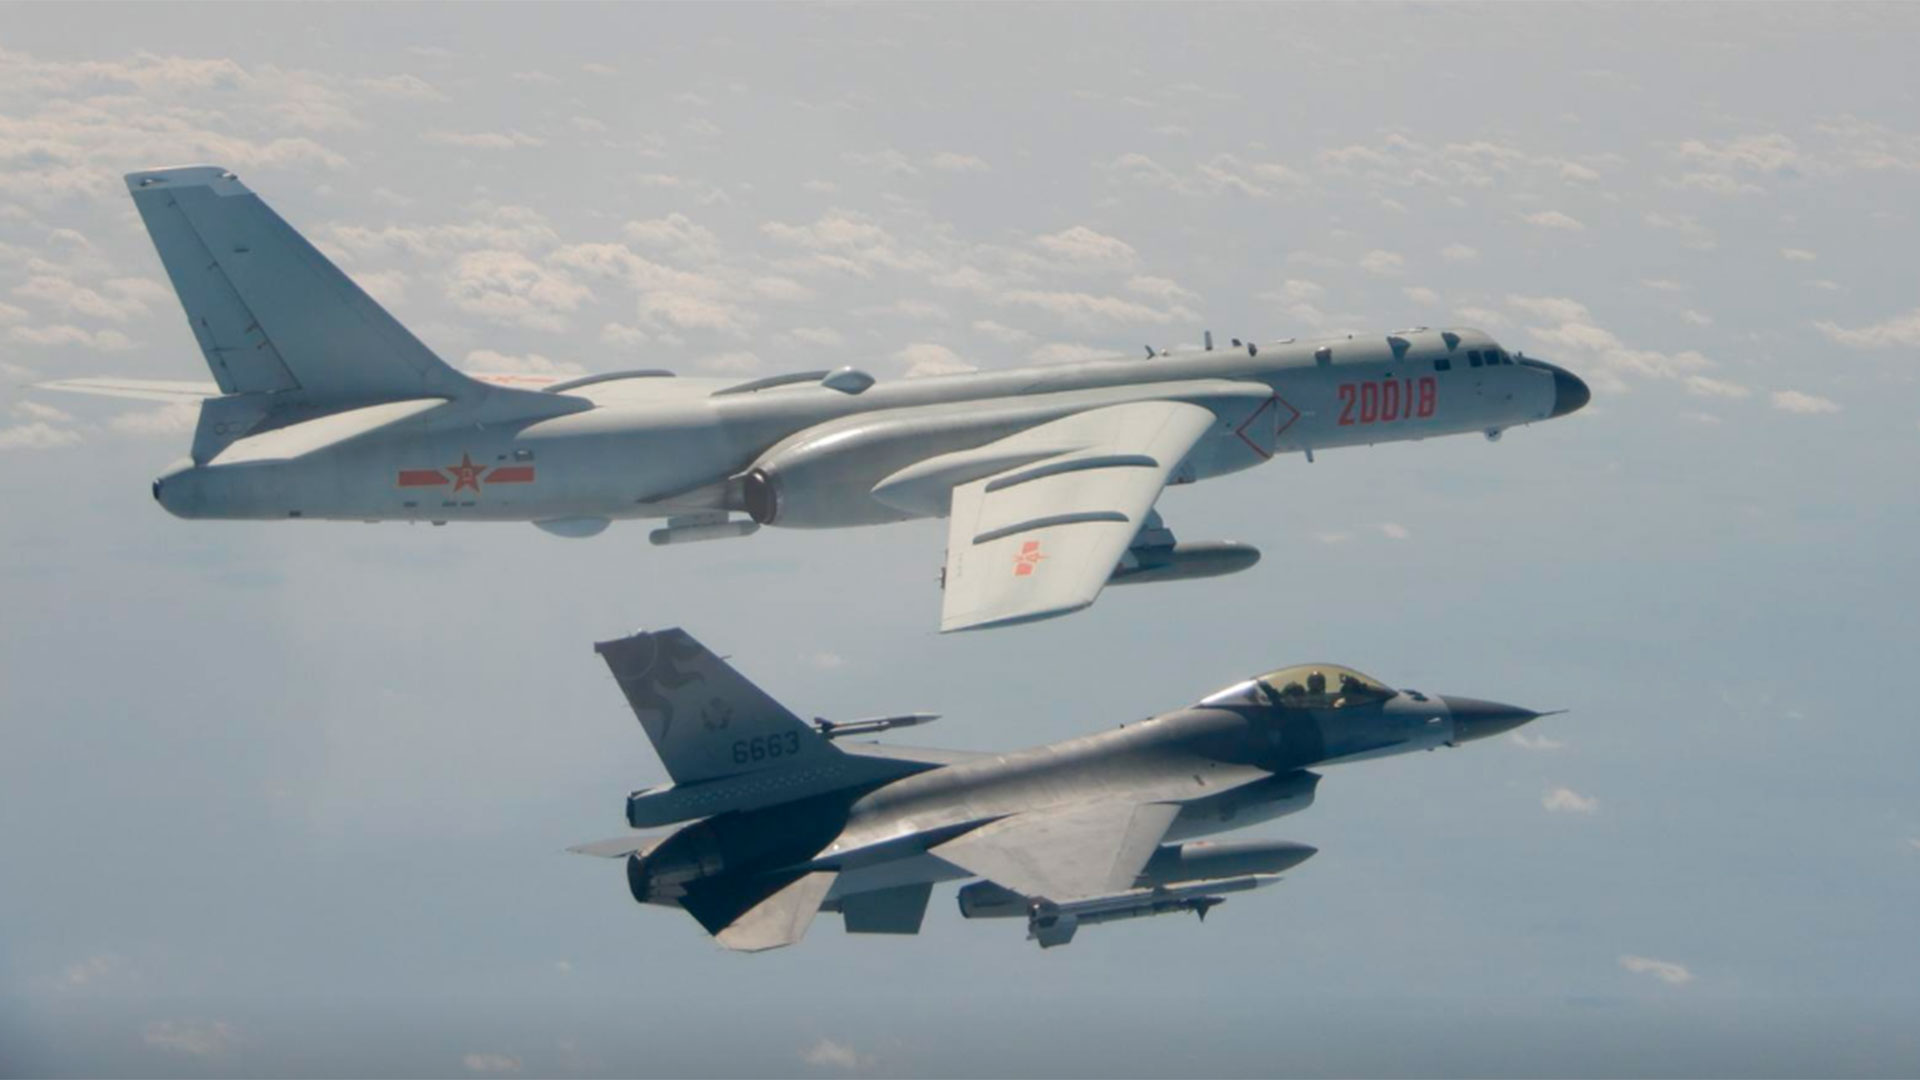 Taiwán denunció la incursión de aeronaves y buques de guerra del Ejército chino en su espacio aéreo y marítimo. (REUTERS)